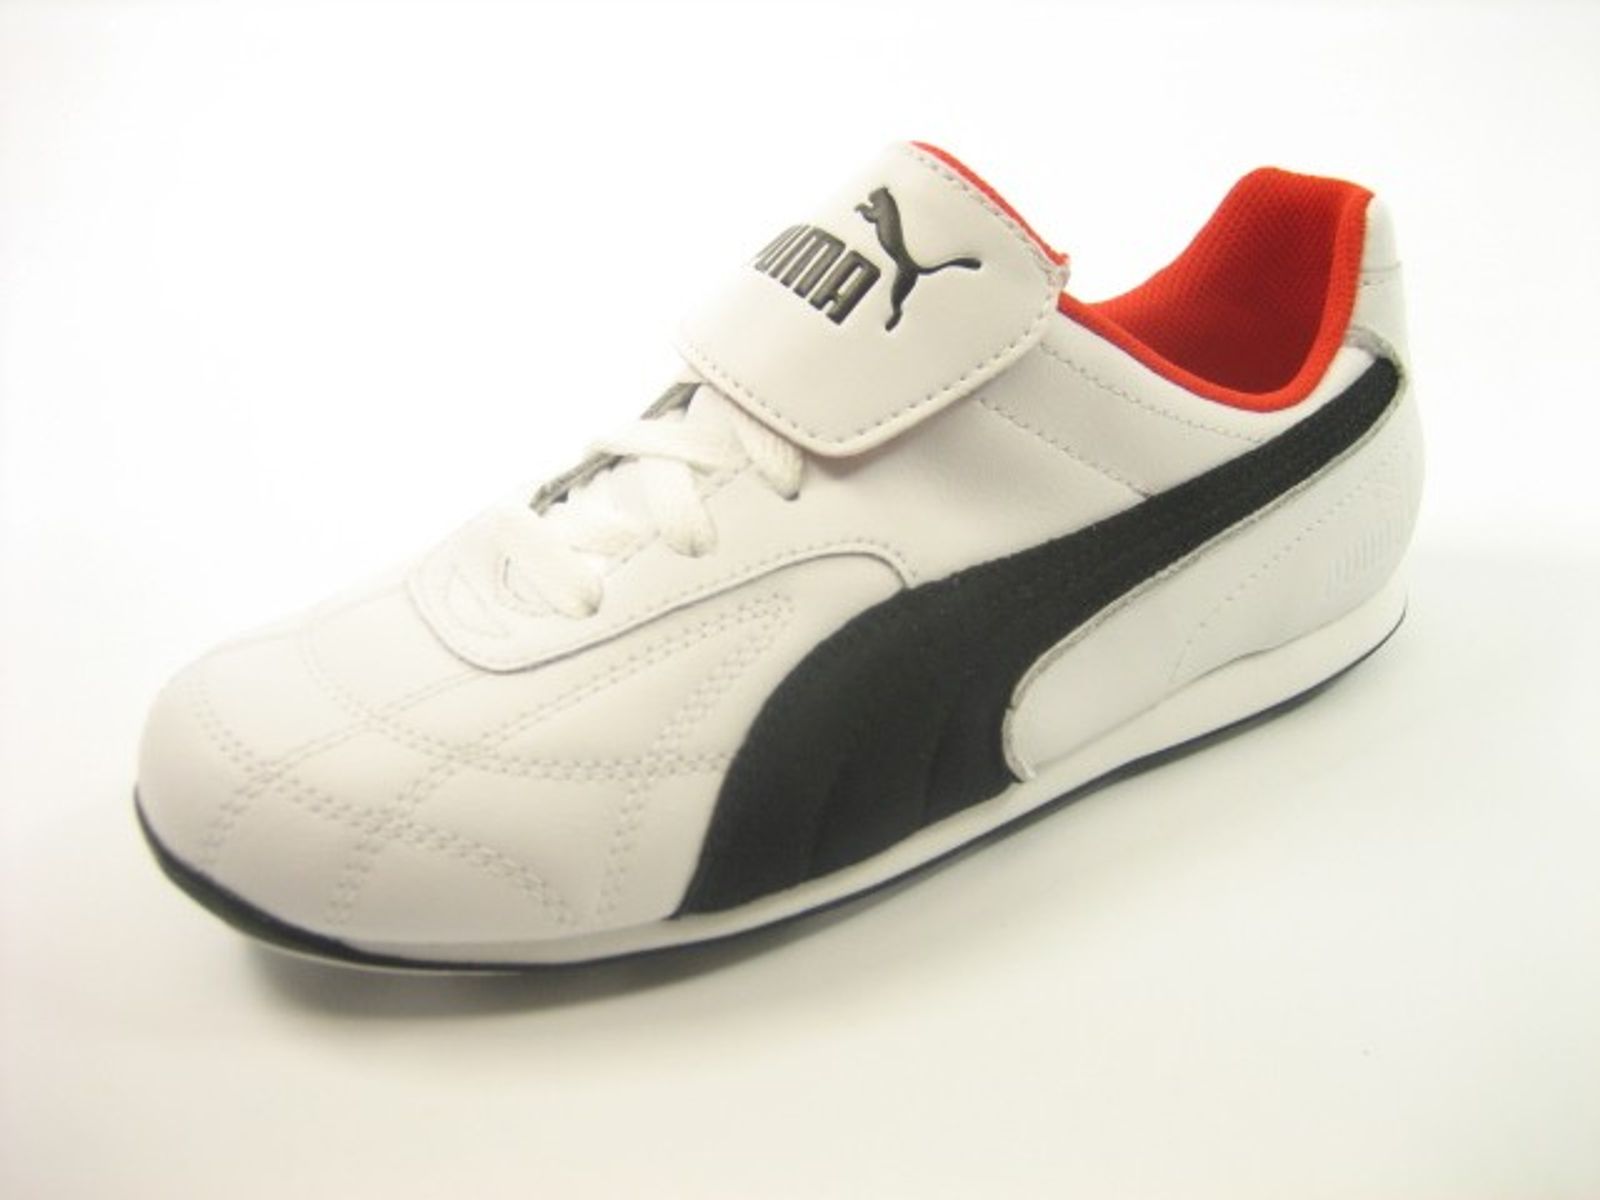 Schuh von Puma, 33